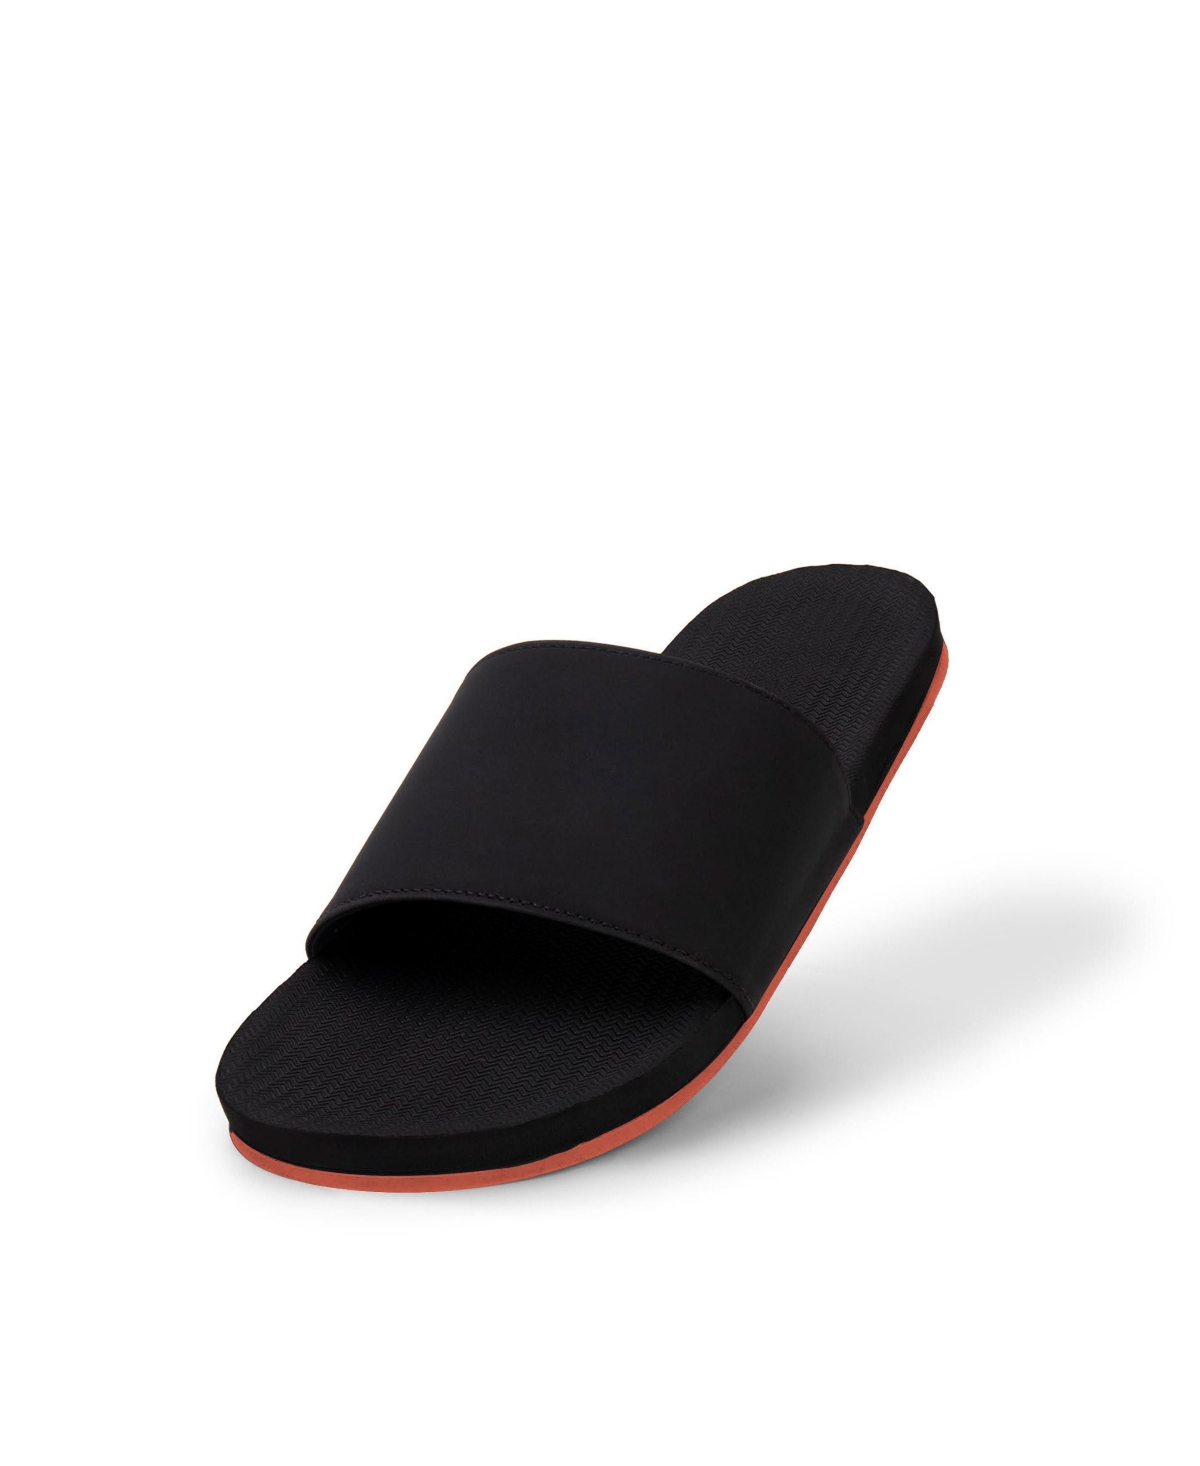 Women's Slide Sneaker Sole - Red sole/black